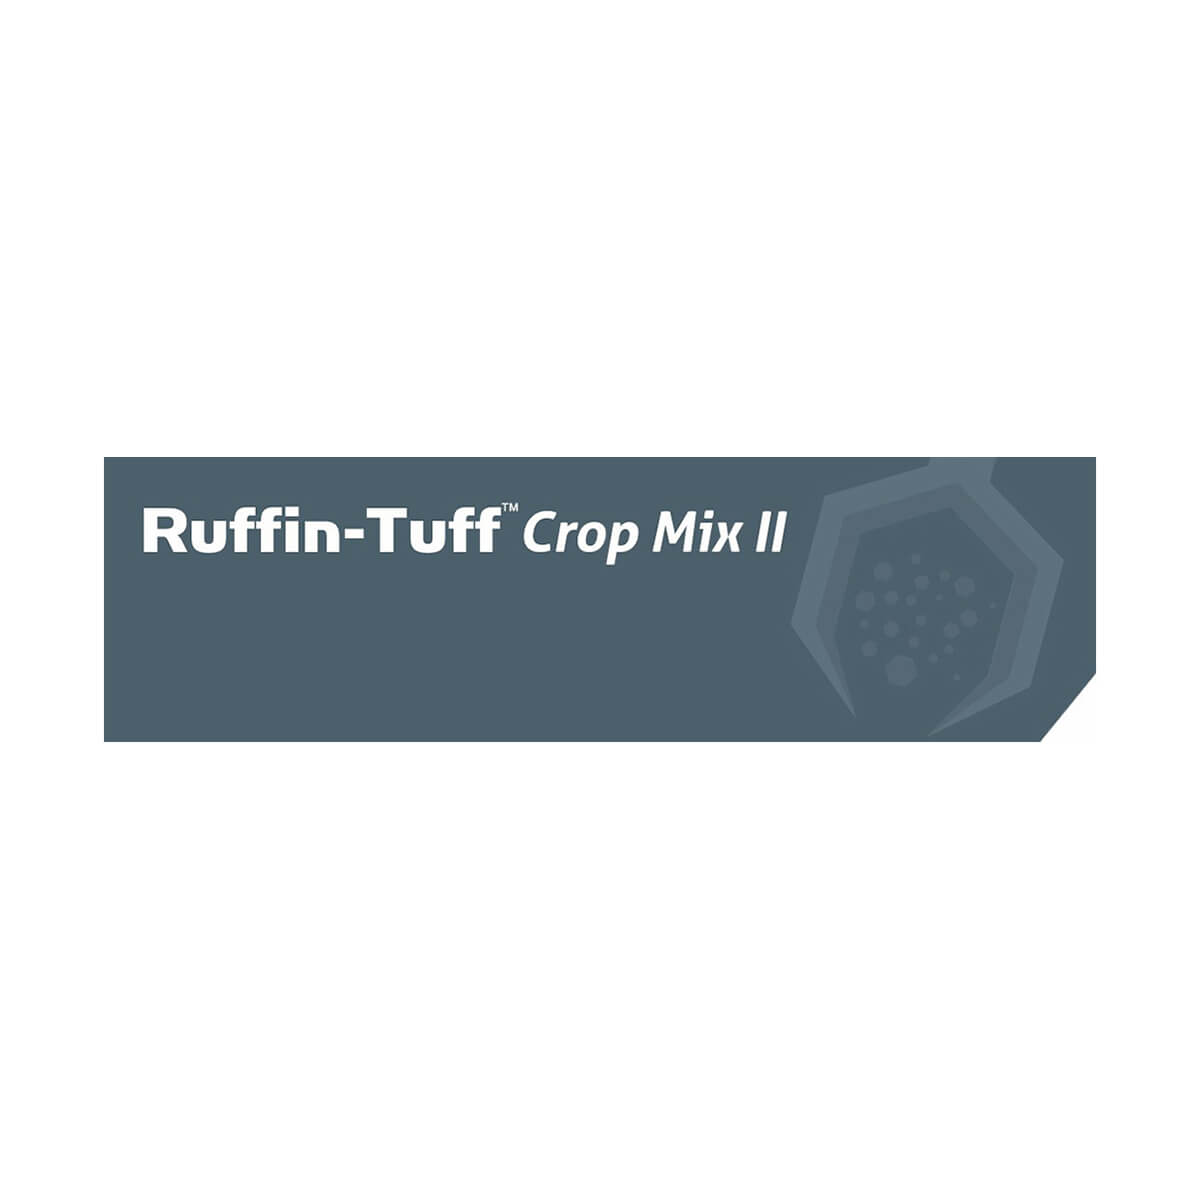 Ruffin-Tuff™ Crop Mix II - 22.7 kg Bag